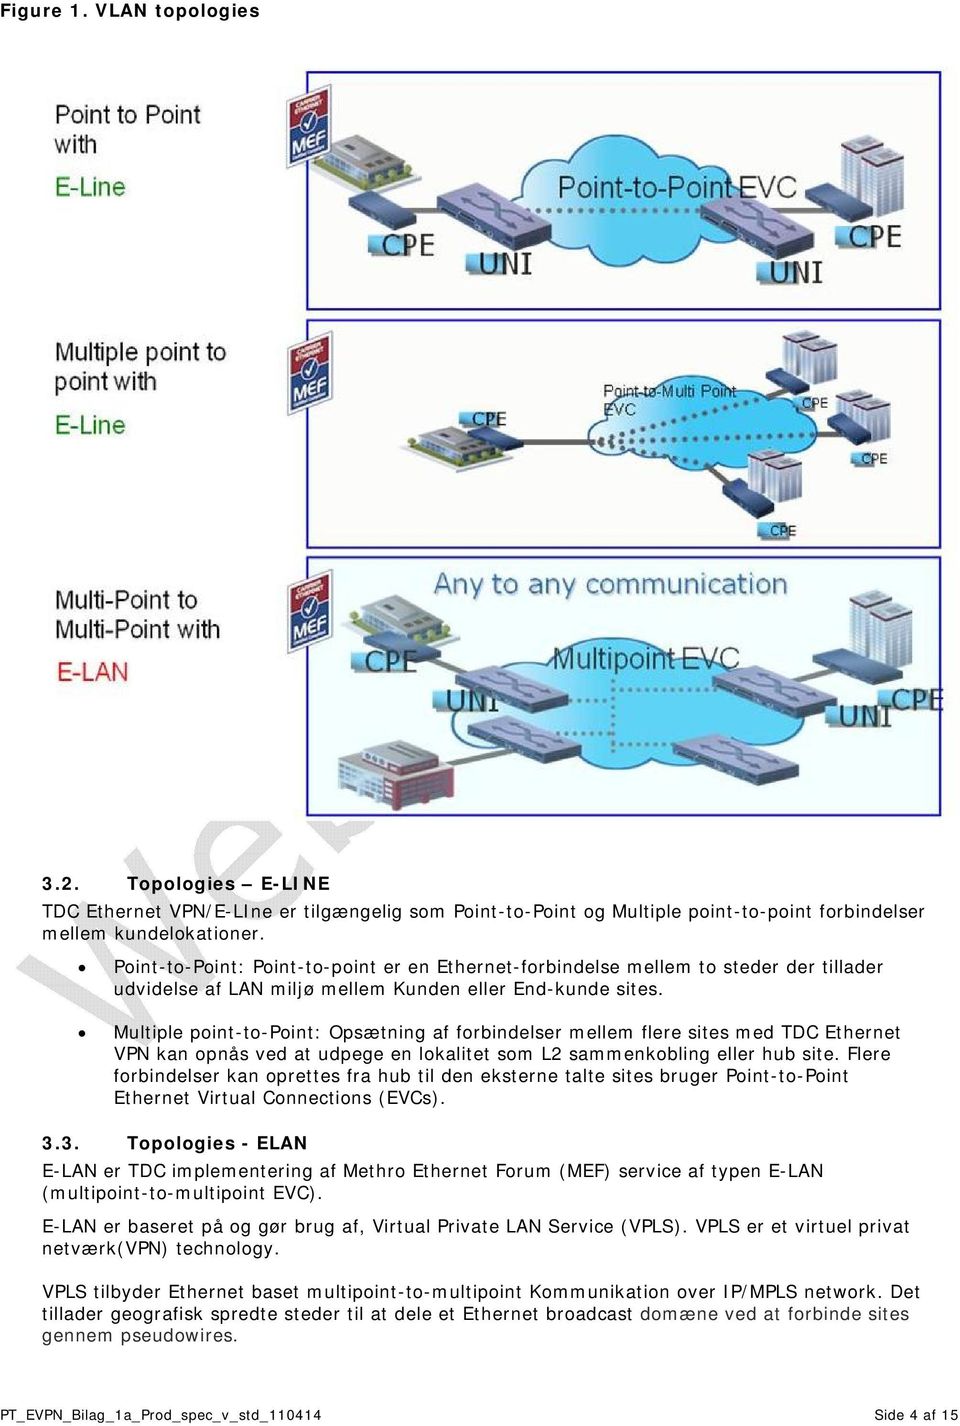 Multiple point-to-point: Opsætning af forbindelser mellem flere sites med TDC Ethernet VPN kan opnås ved at udpege en lokalitet som L2 sammenkobling eller hub site.